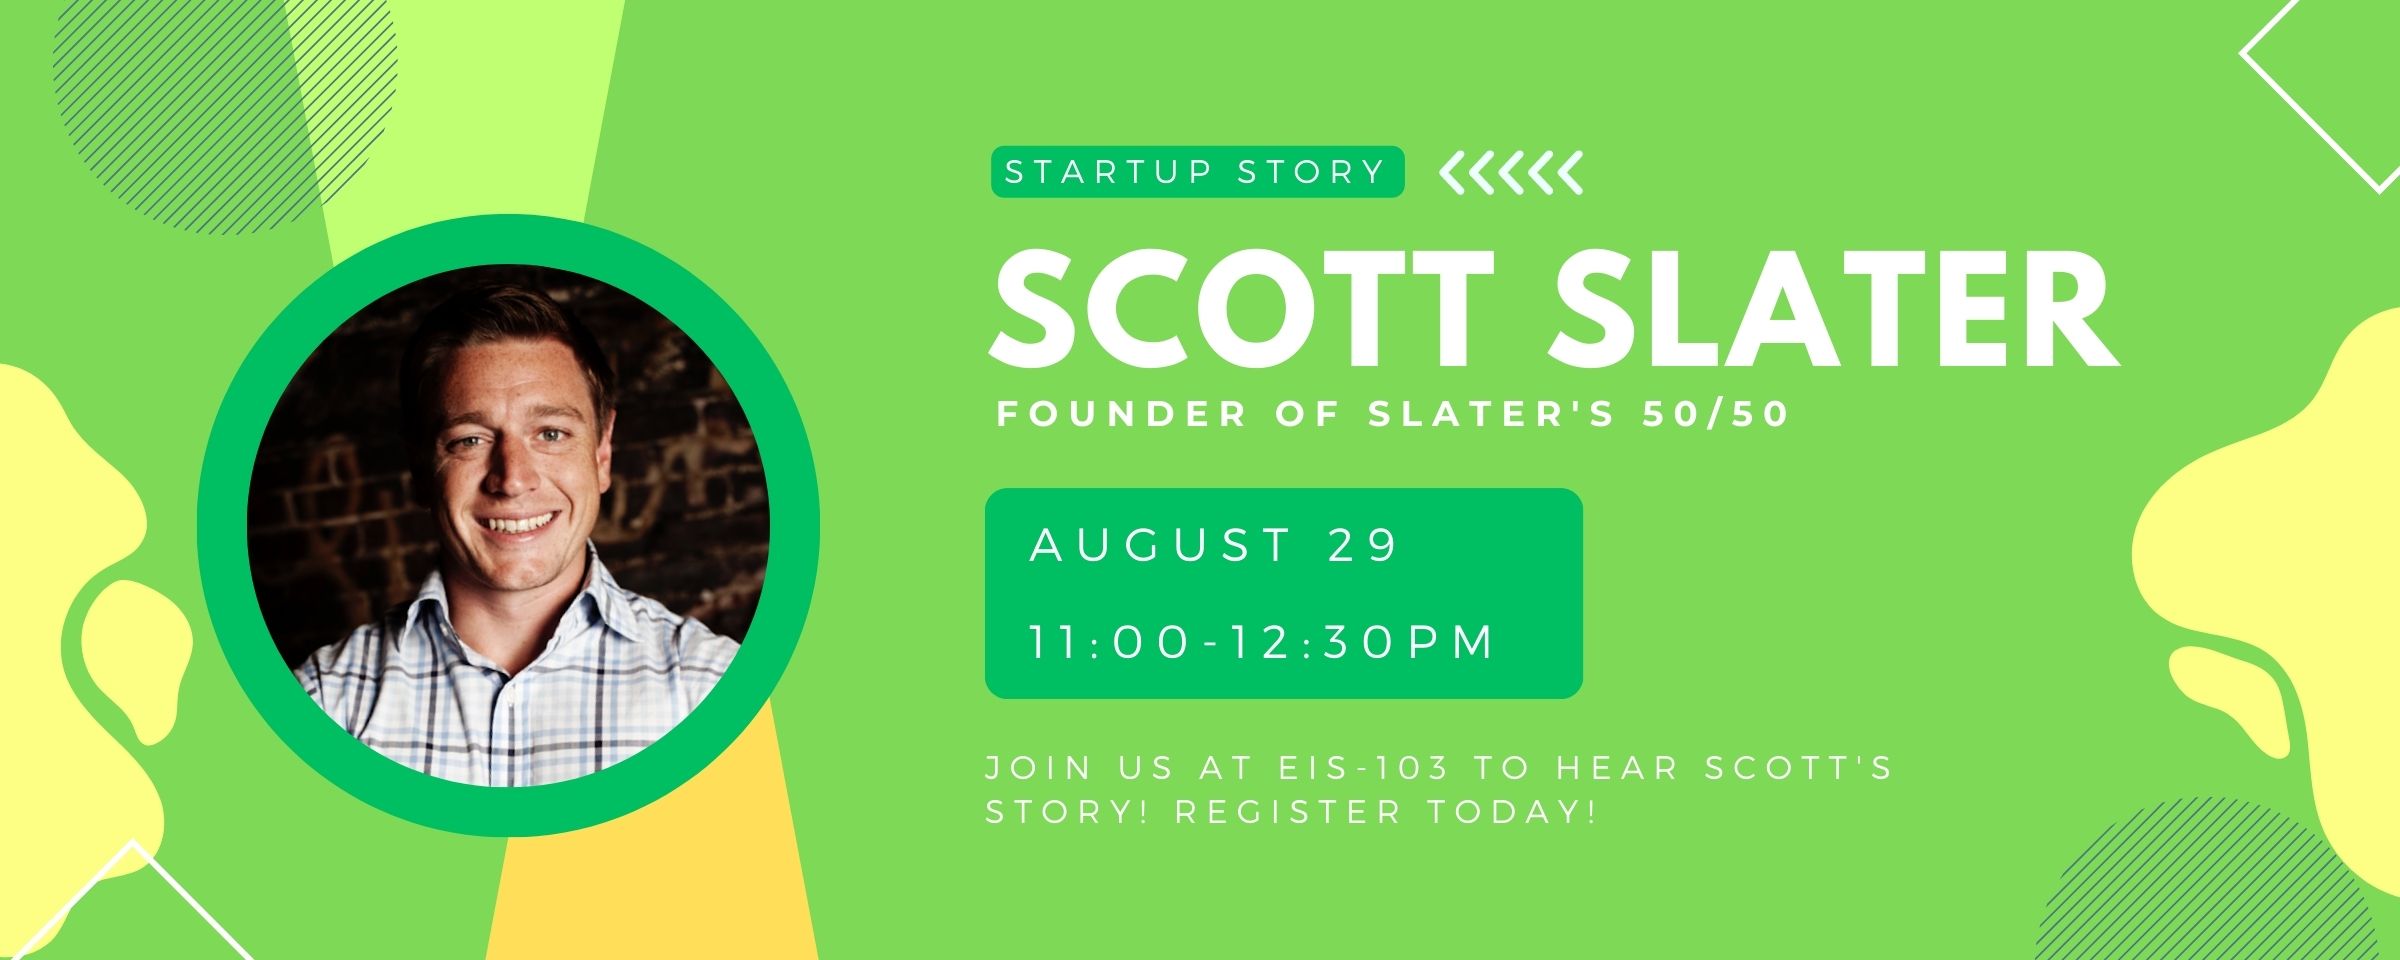 Scott Slater Startup Story